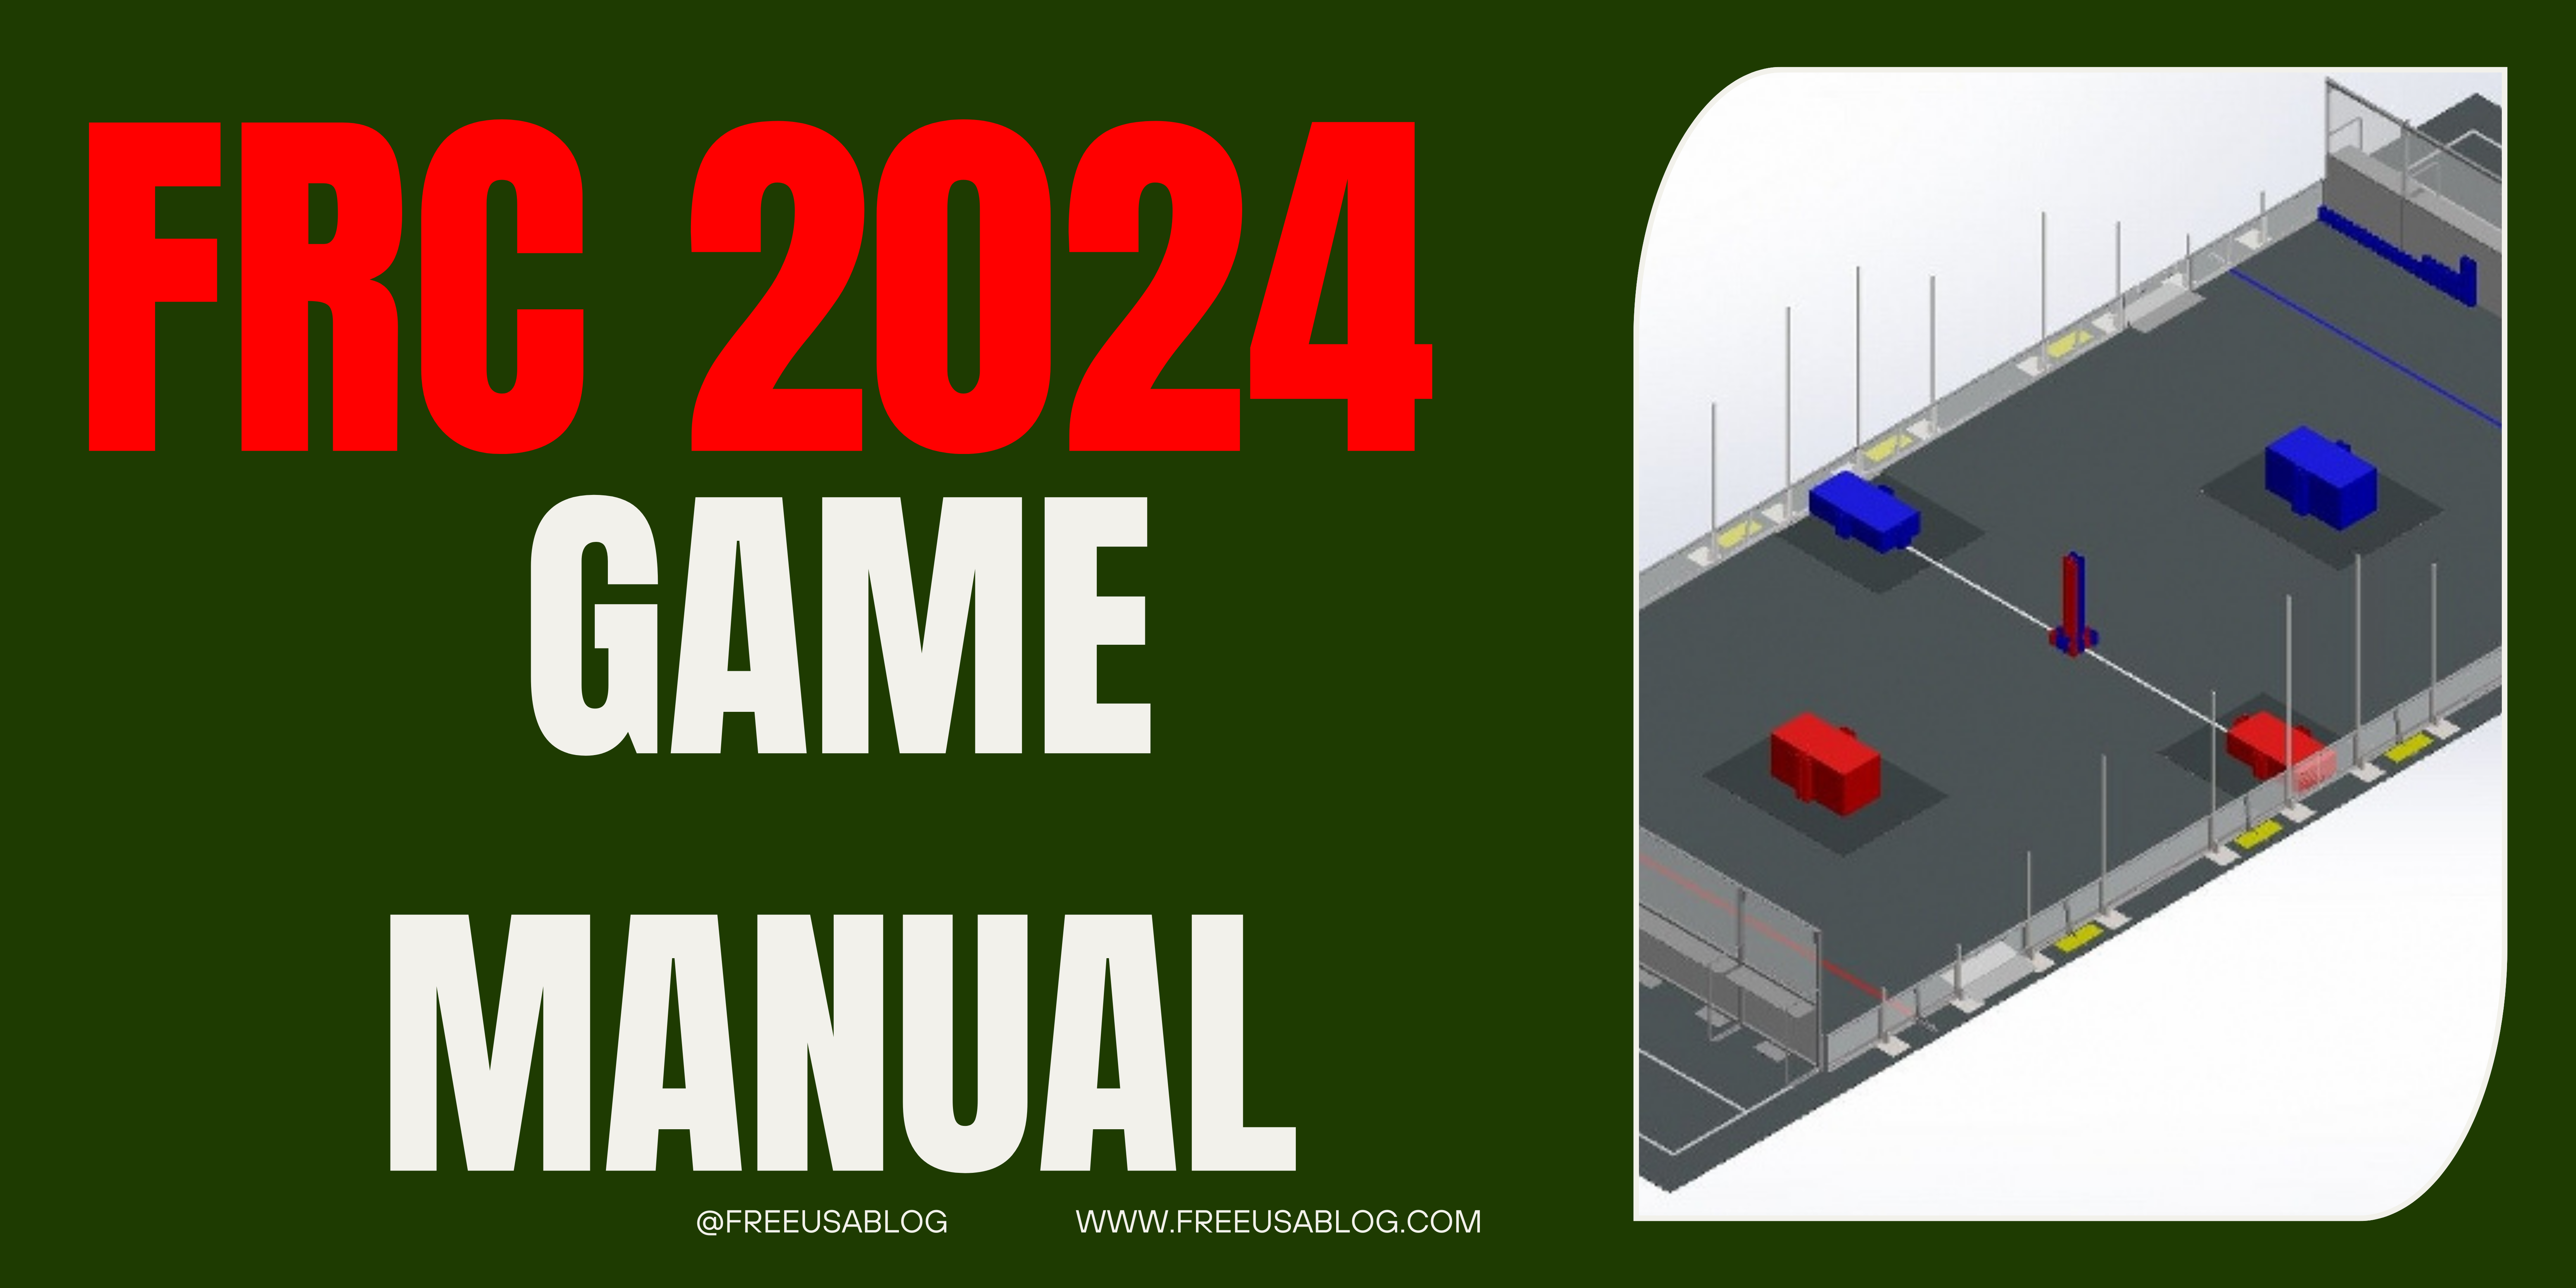 FRC 2024 game manual